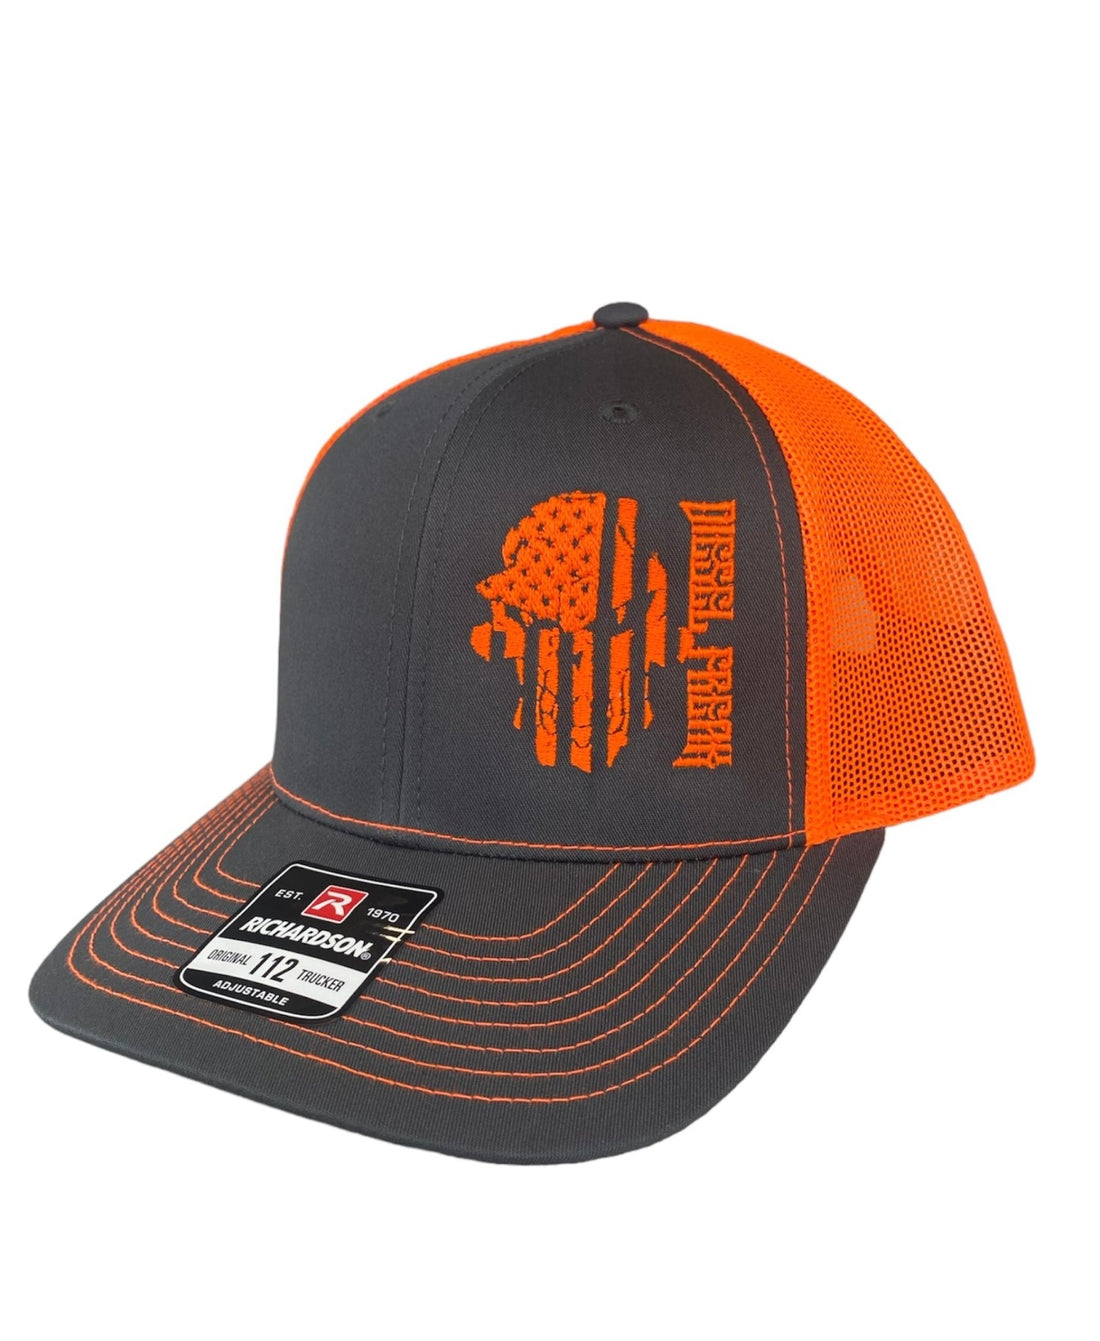 Neon Orange Flag Skully Snapback Hat - Diesel Freak